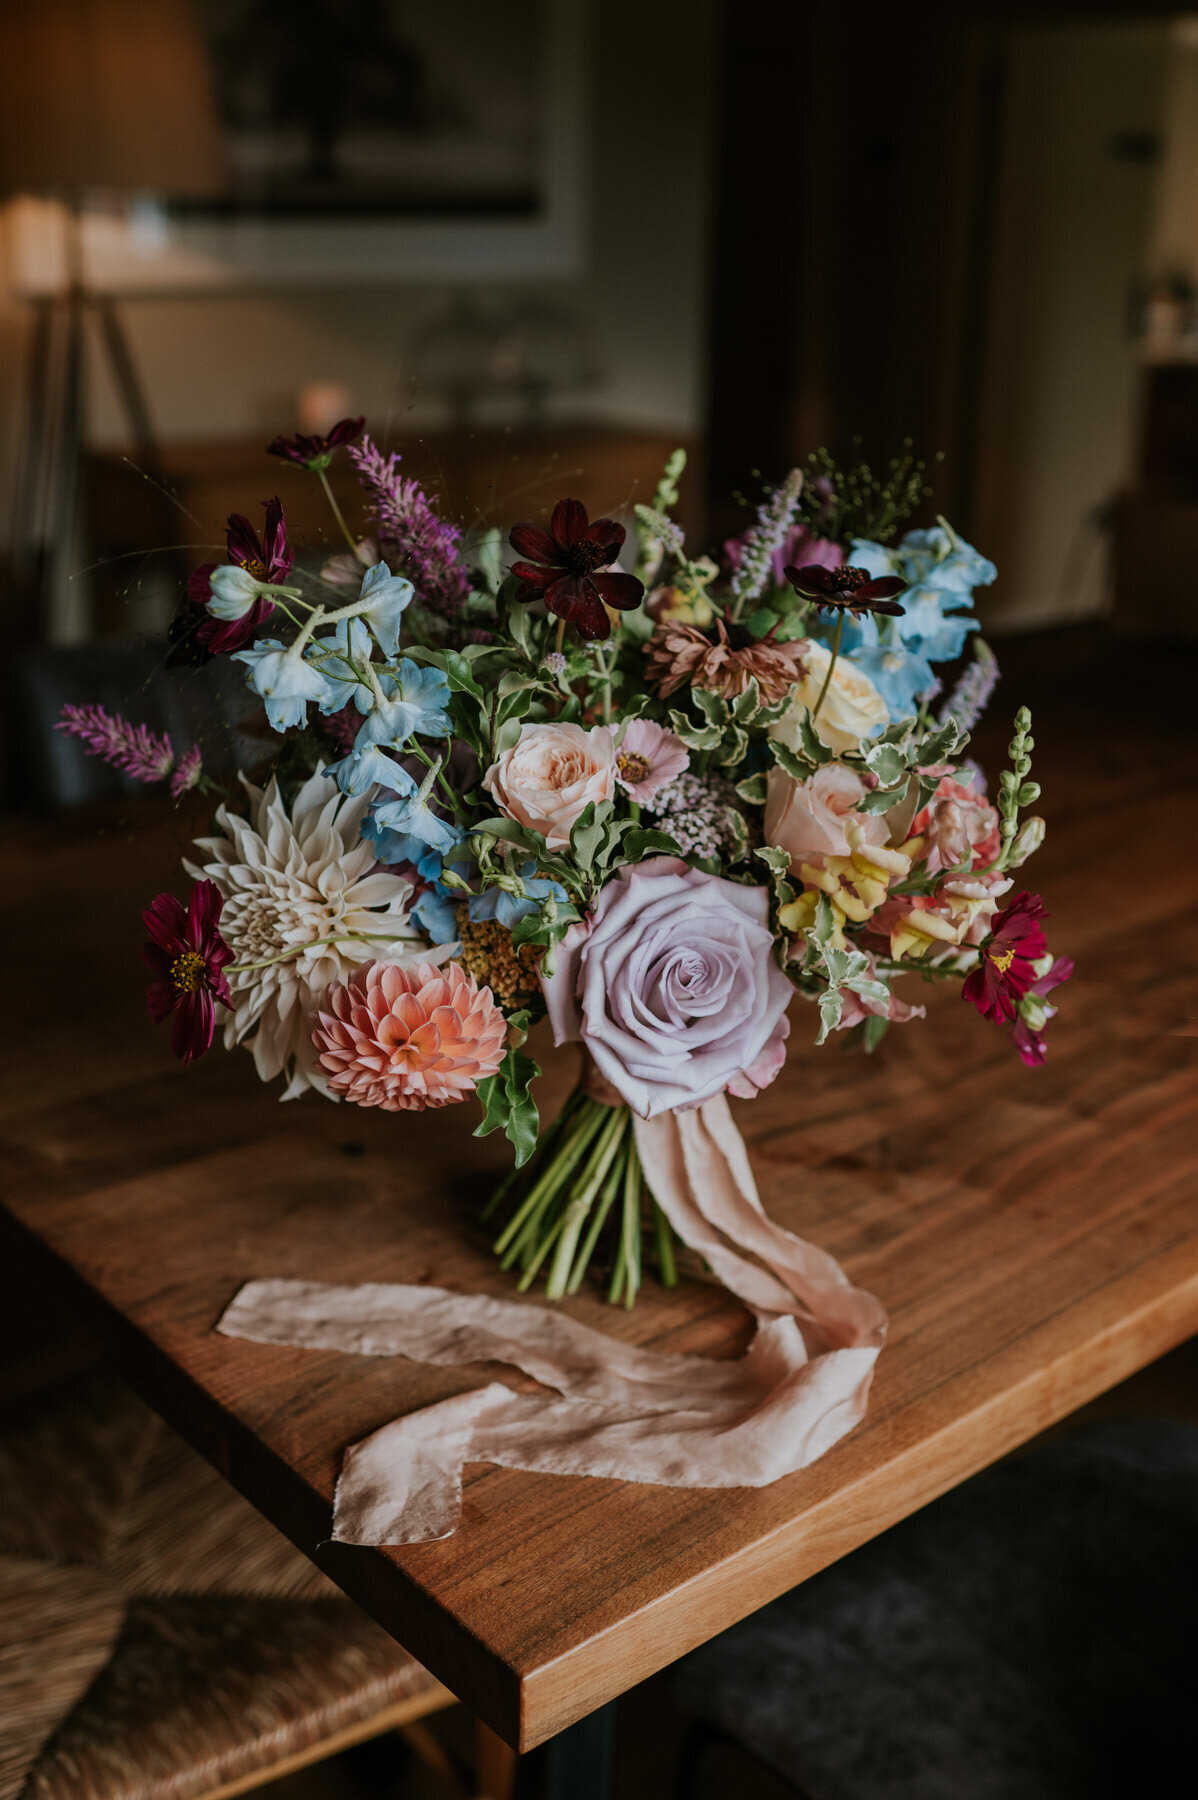 Bouquet on table in window light